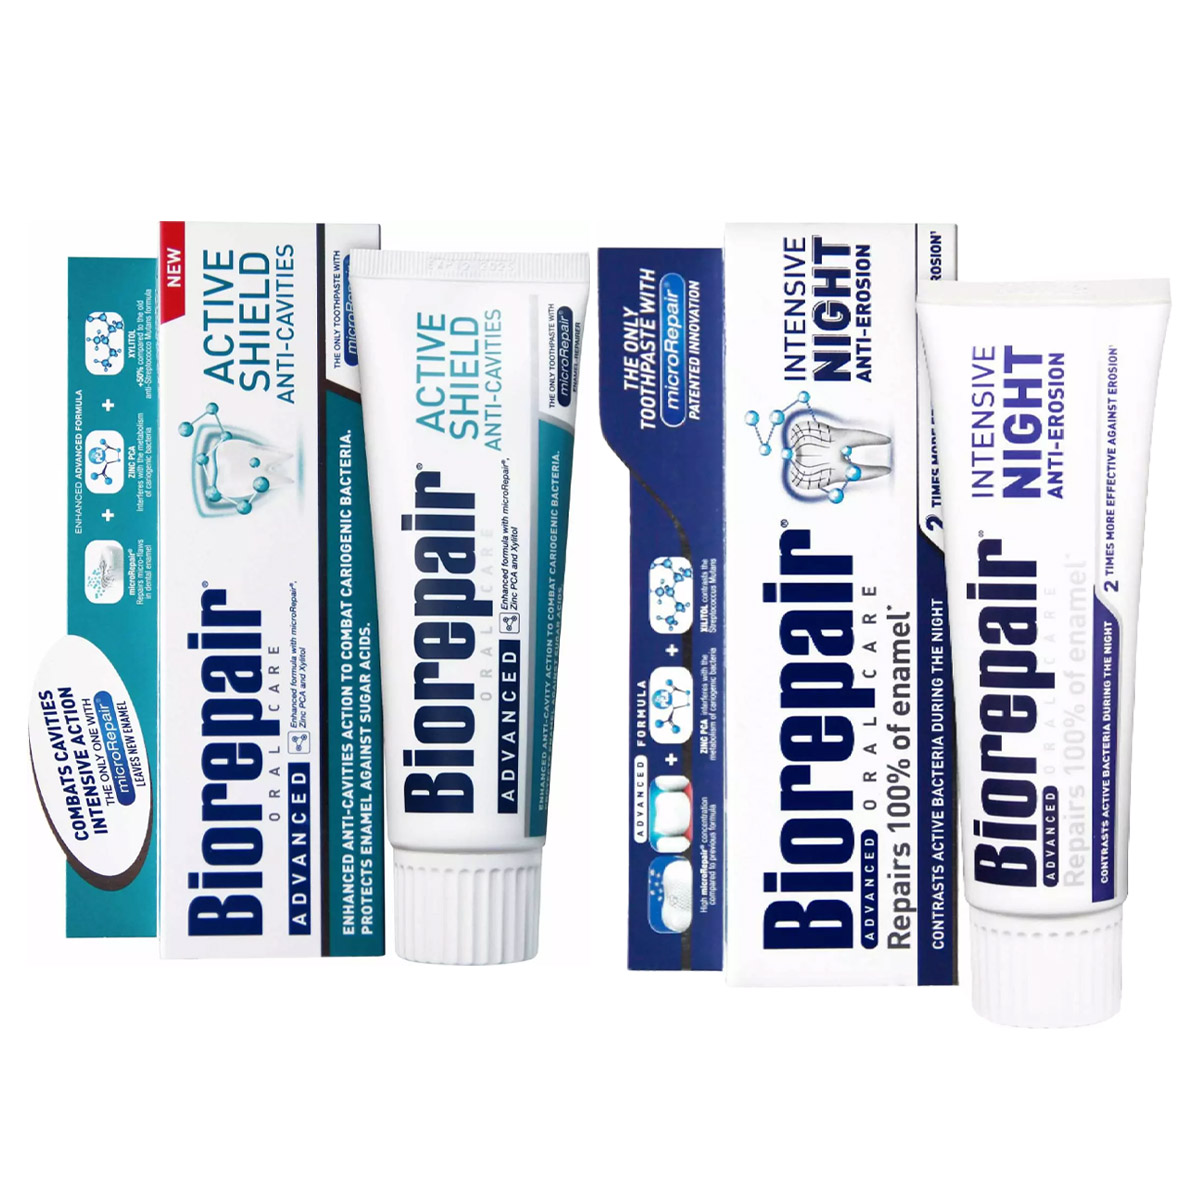 Biorepair Набор зубных паст для защиты эмали, 2х75 мл (Biorepair, Отбеливание и лечение) biorepair набор зубных паст для комплексной защиты зубов и эмали 2х75 мл biorepair ежедневная забота